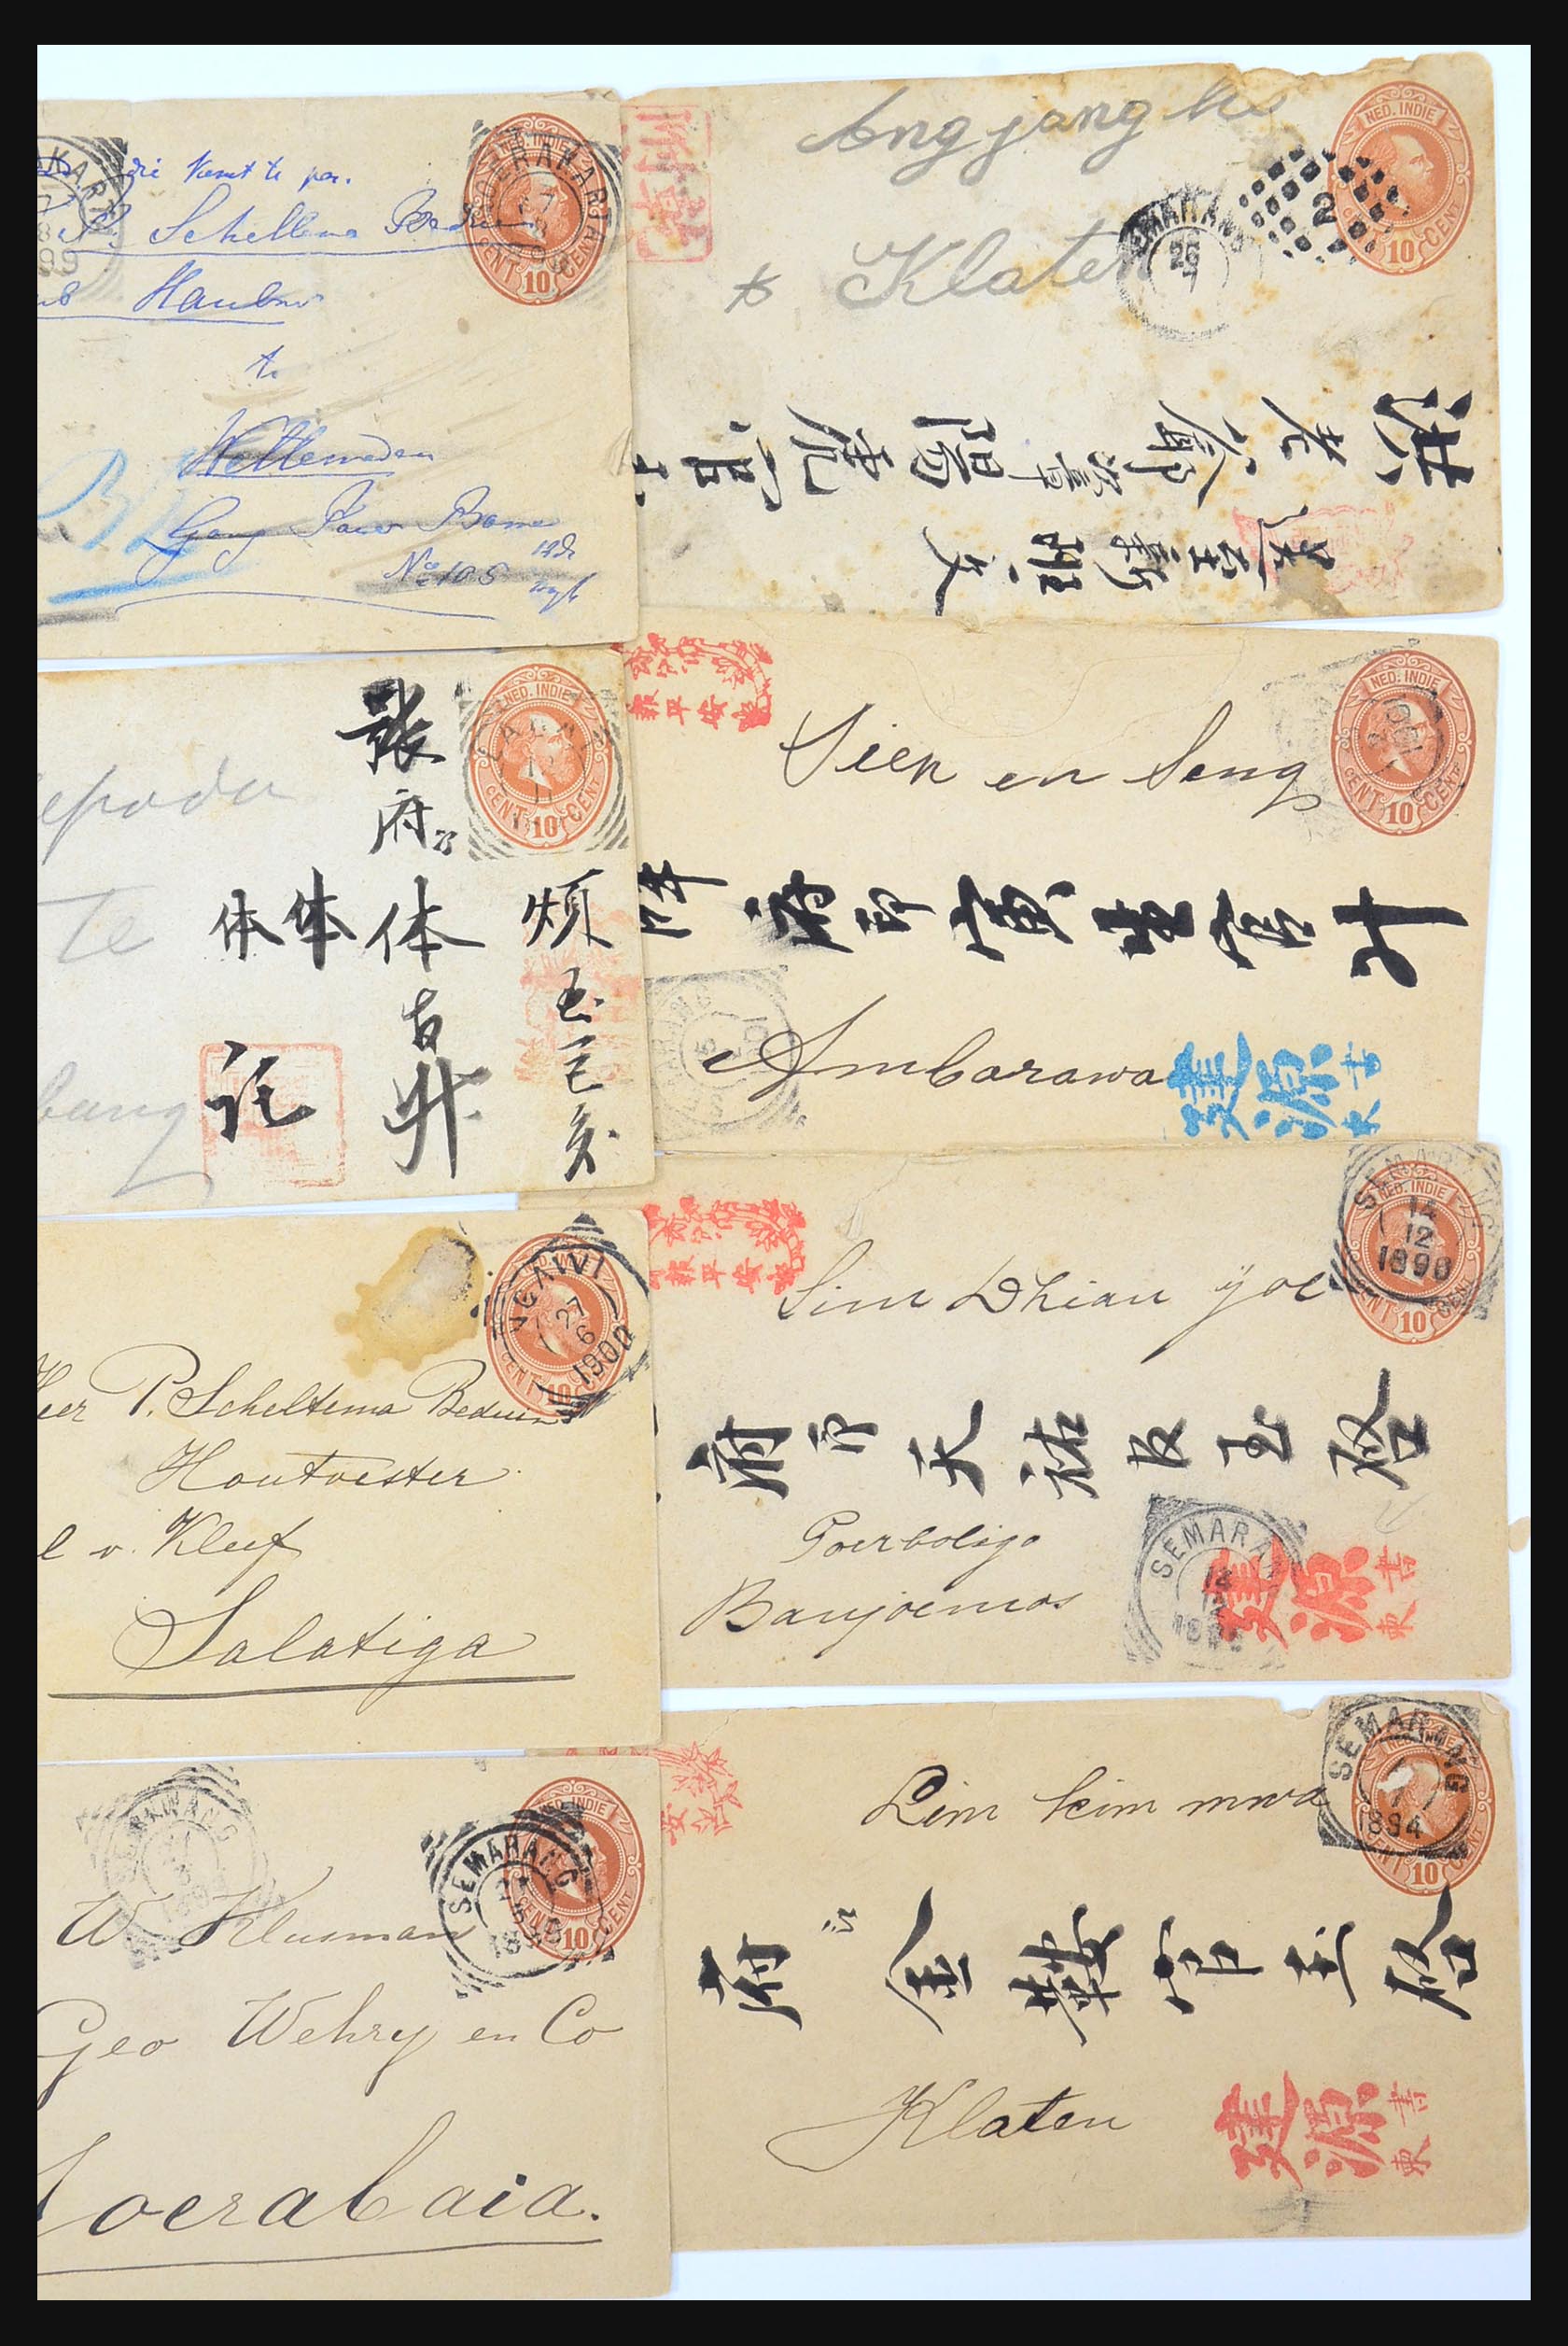 31361 023 - 31361 Nederlands Indië brieven 1880-1950.